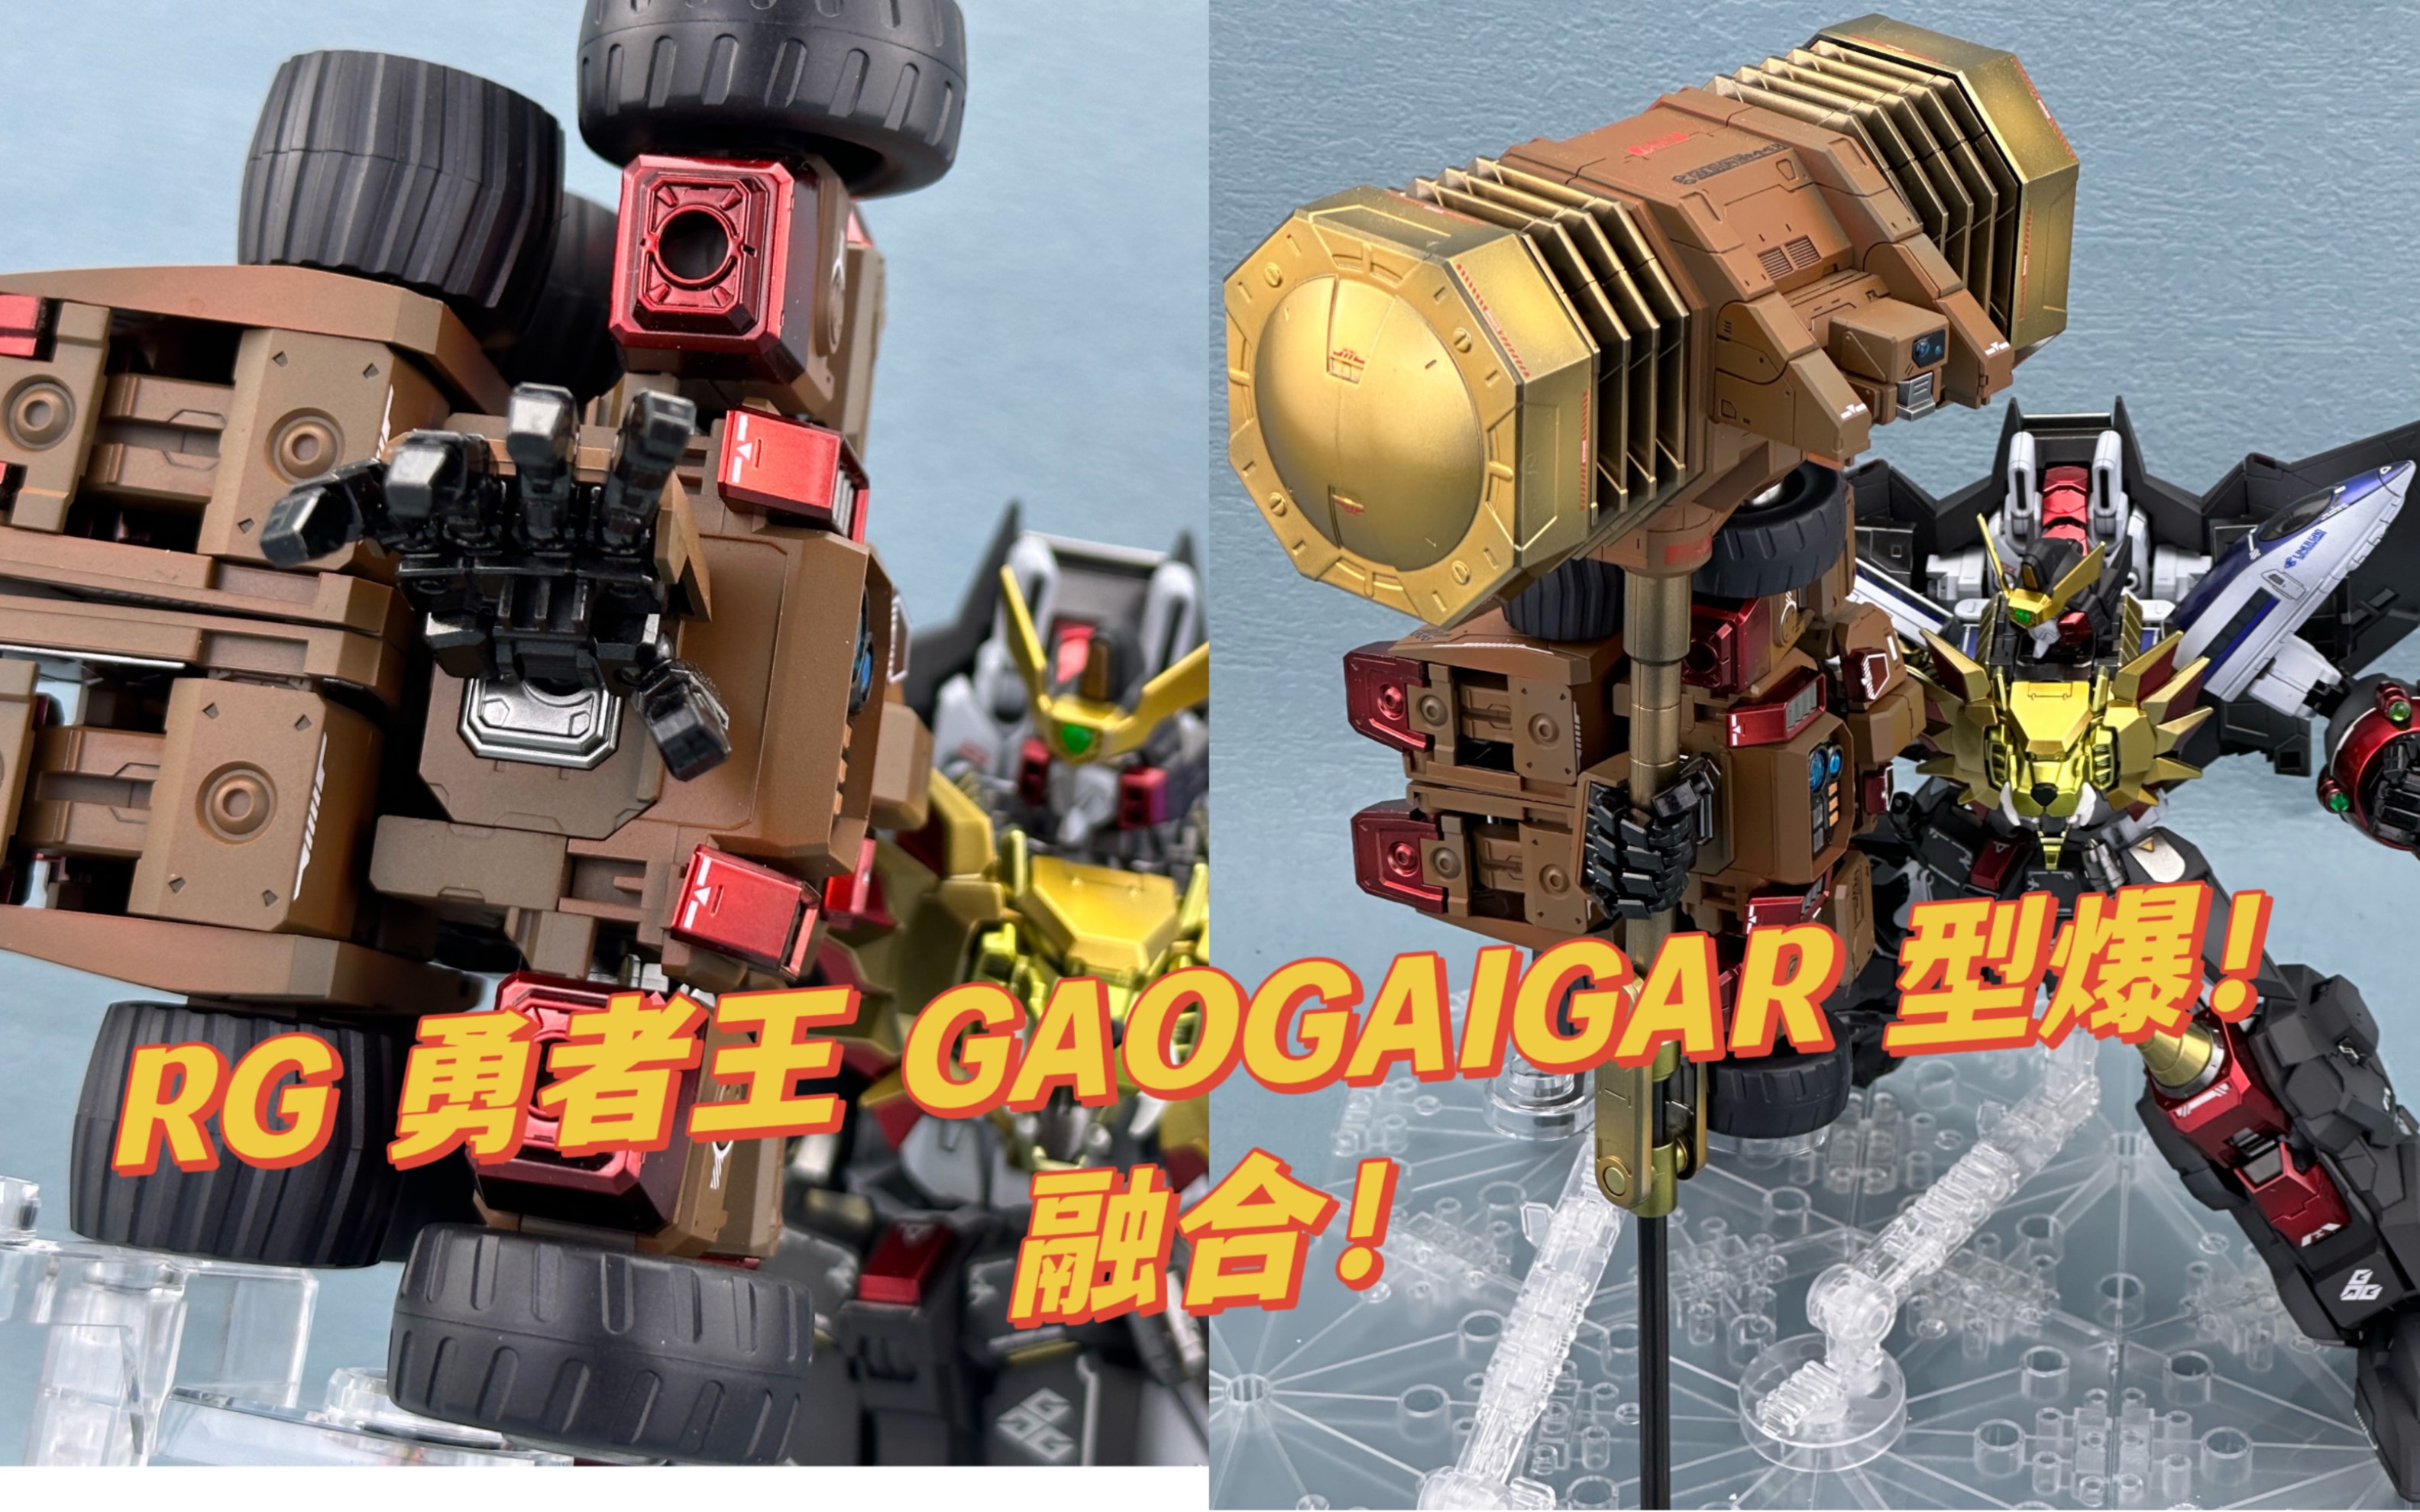 万代 RG 勇者王 GGG+黄金马克 锤子 GAOGAIGAR  喷涂展示